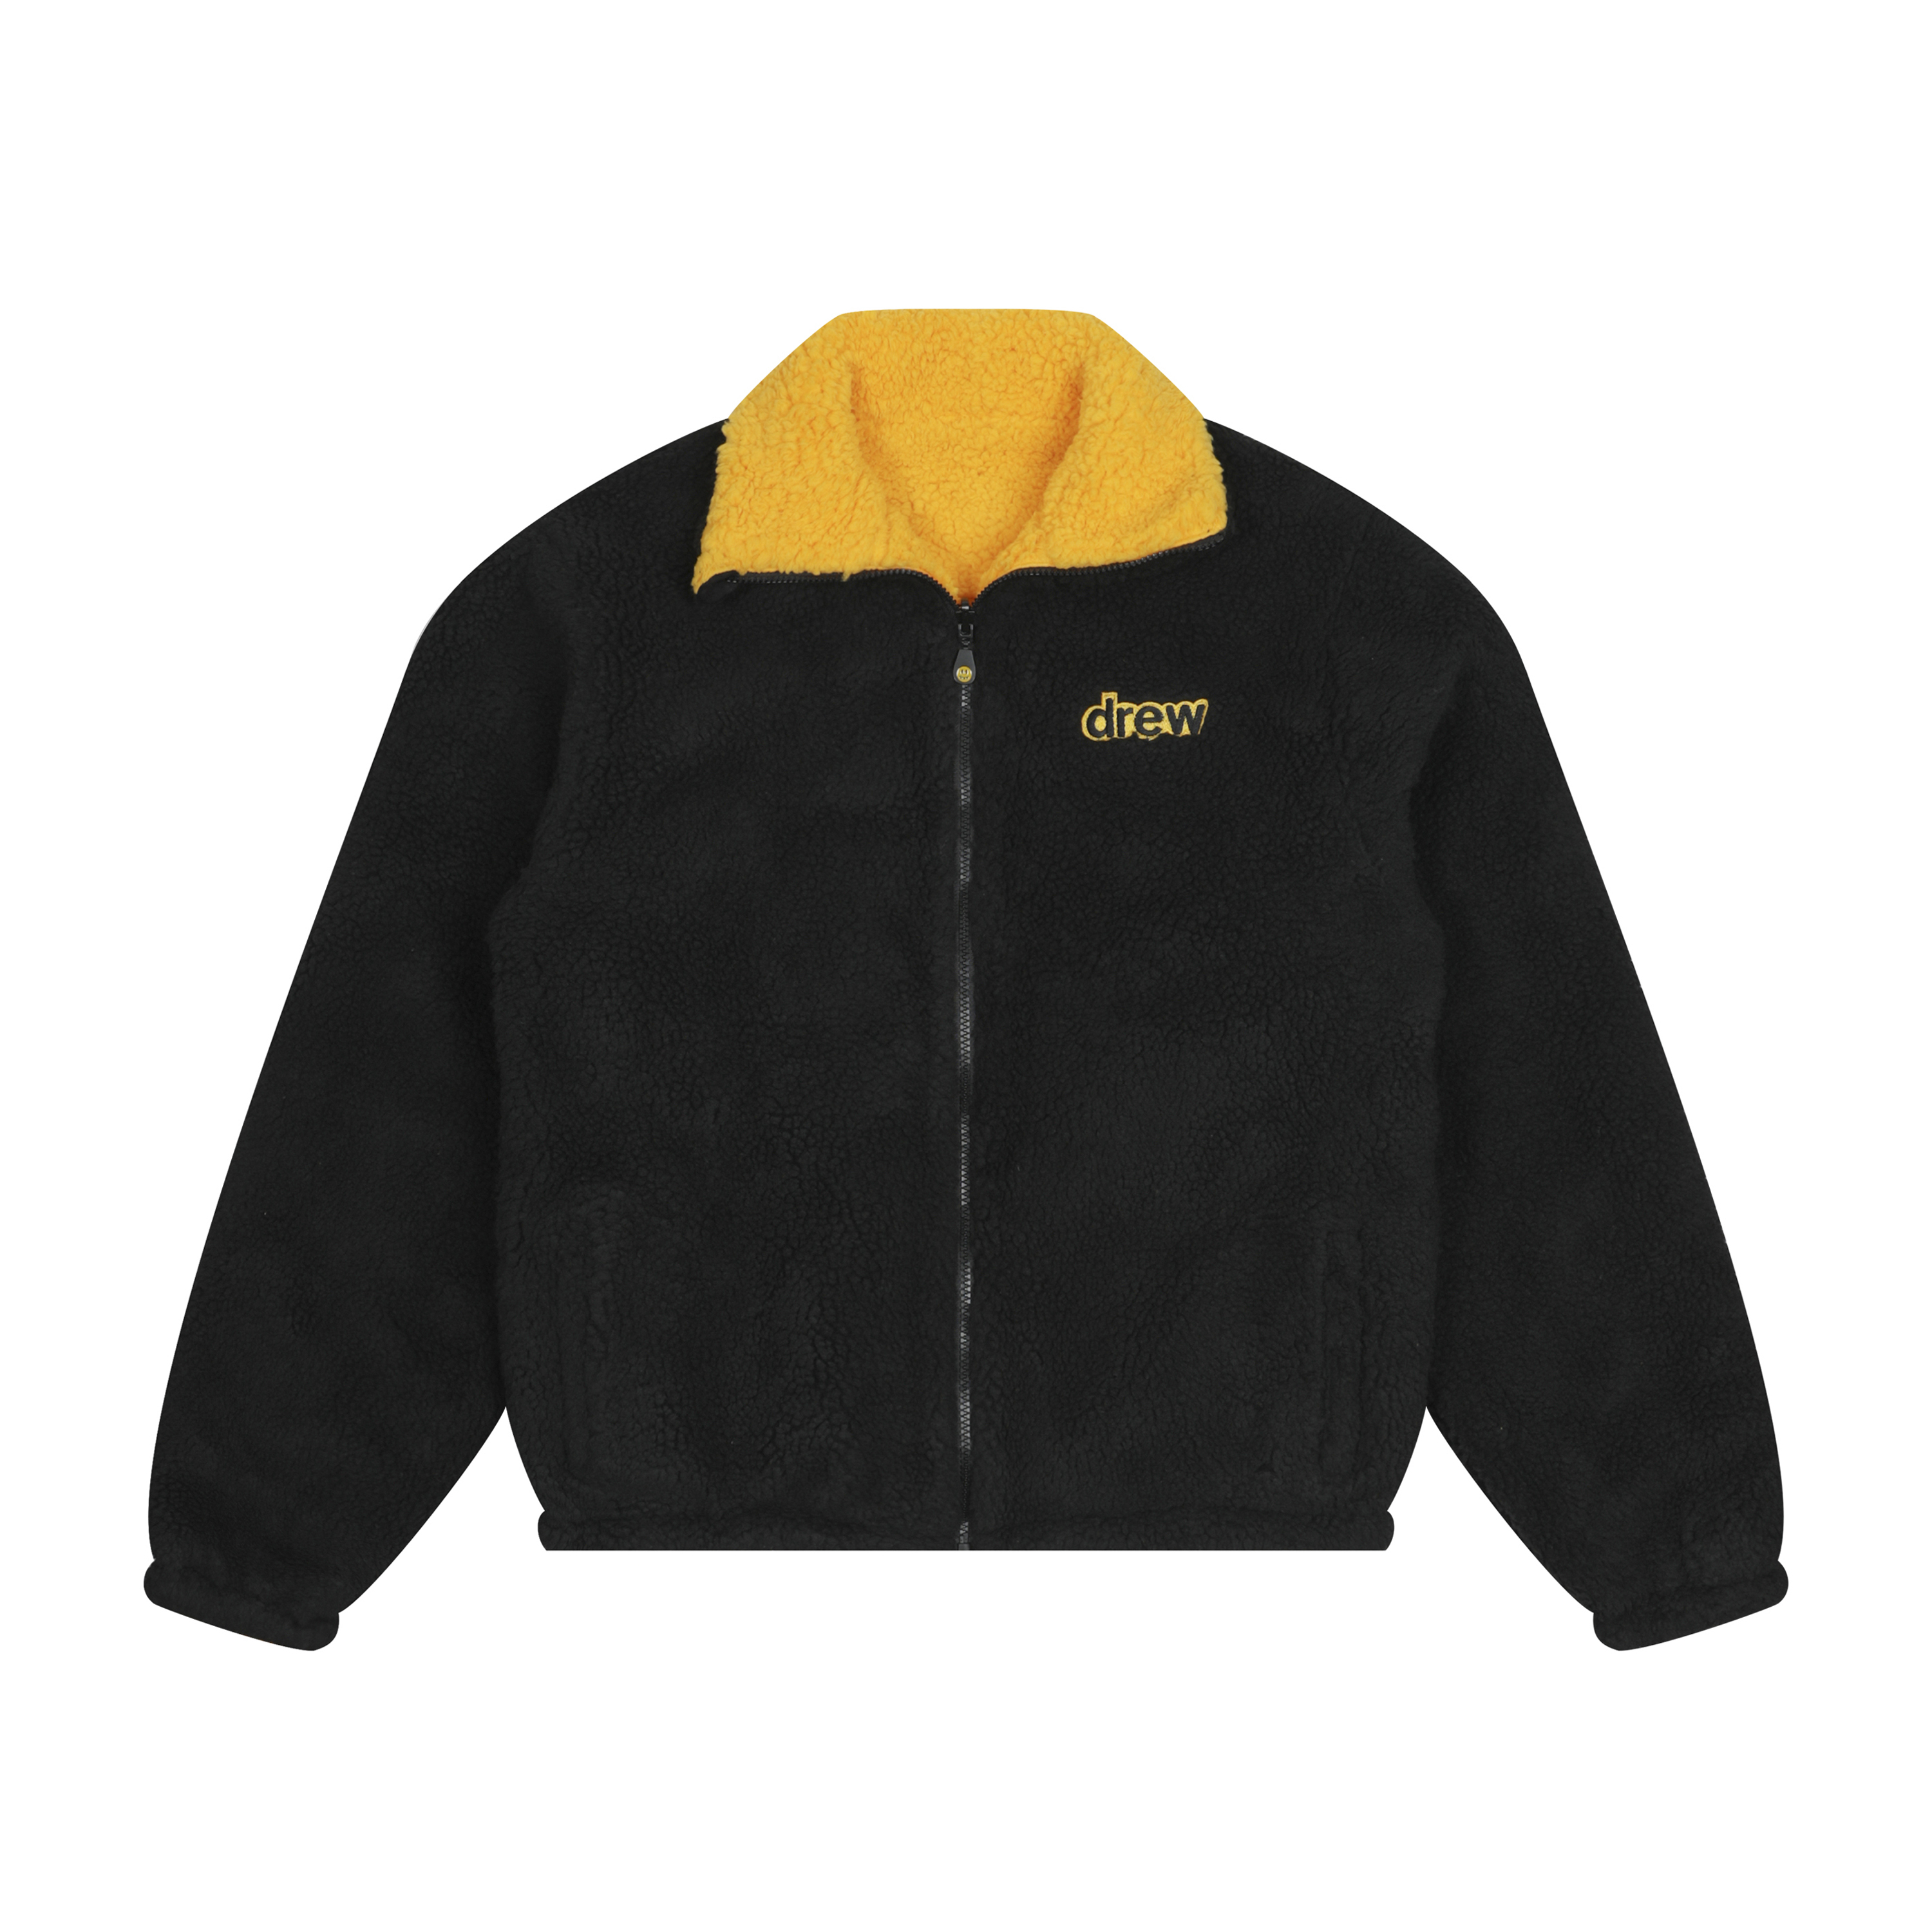 drew house reversible zip up jacket black/golden yellow Men's